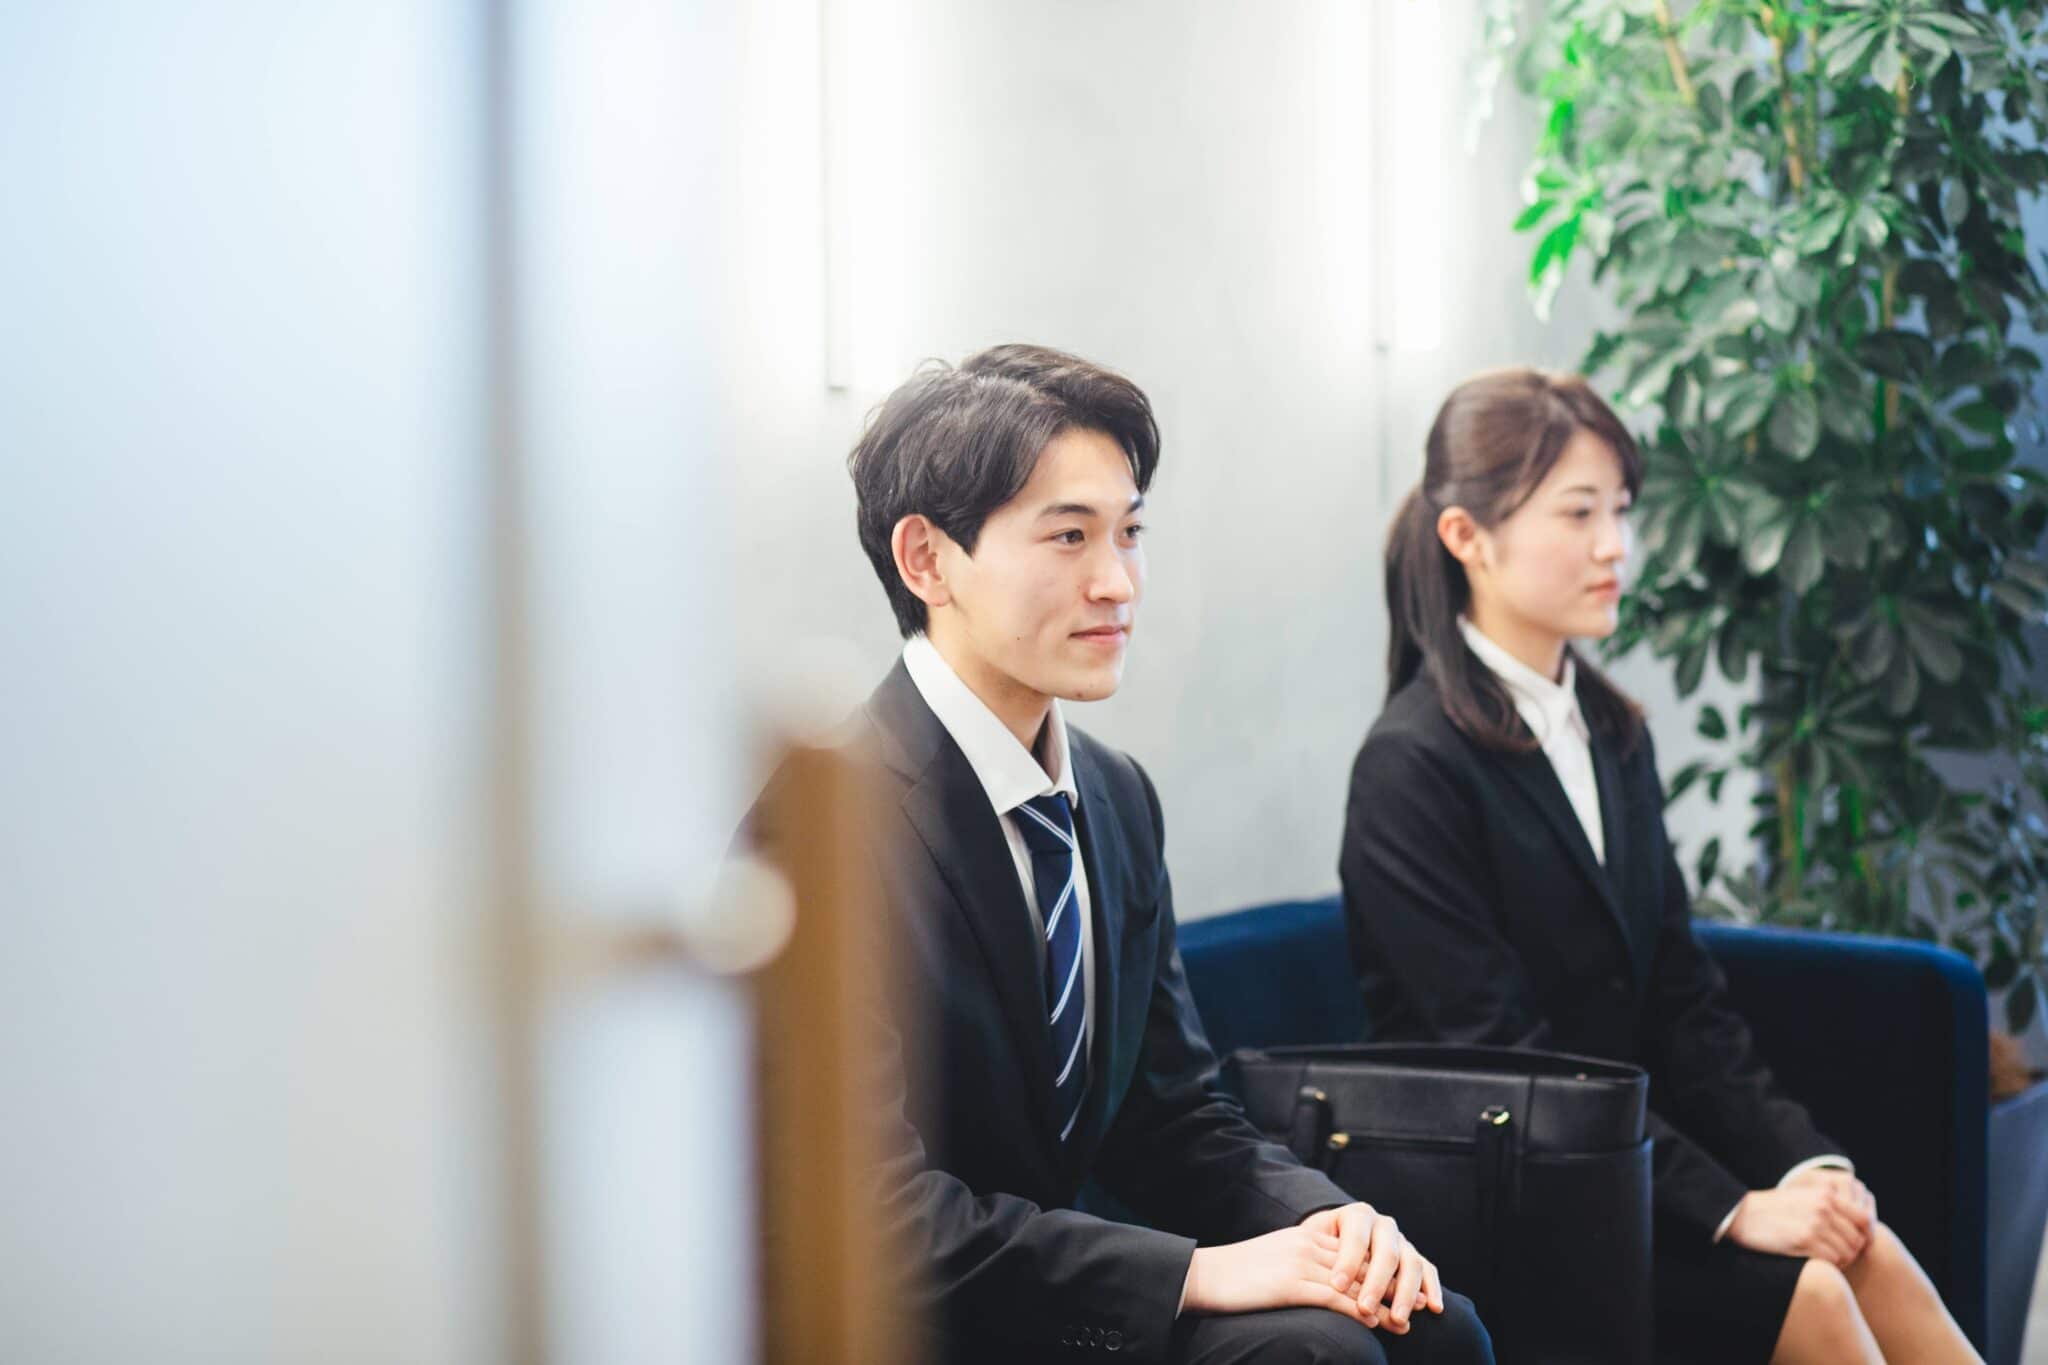 【企業研究】東京エレクトロンの就職難易度・採用大学・選考対策を徹底解説